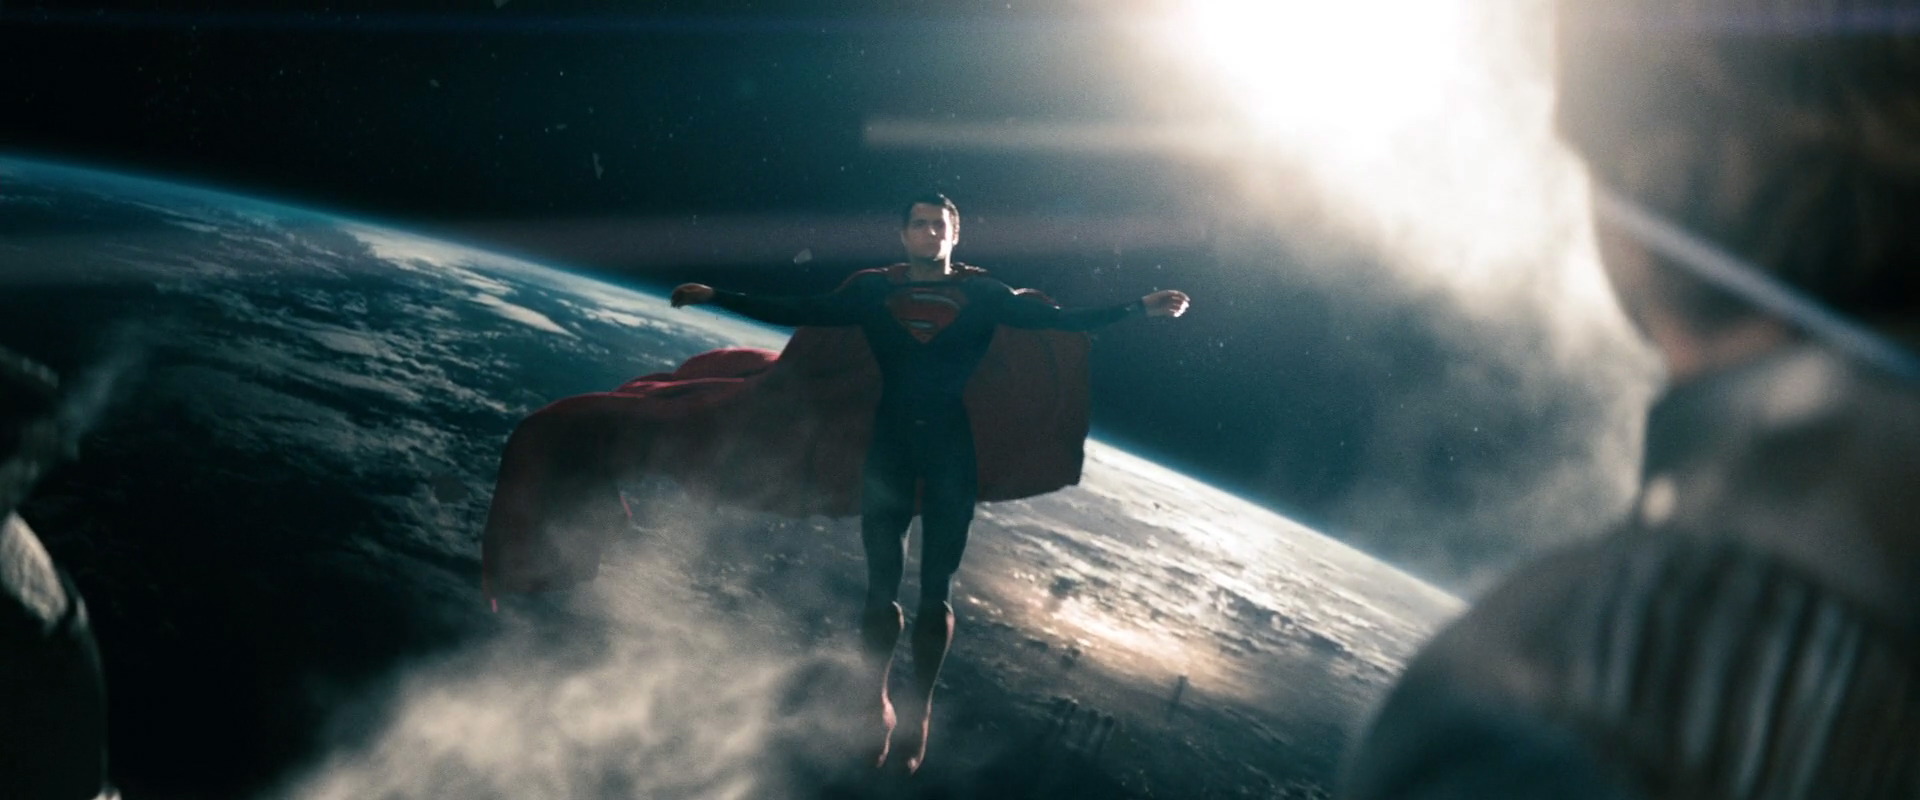 Movie Review: Man of Steel Superman Reborn